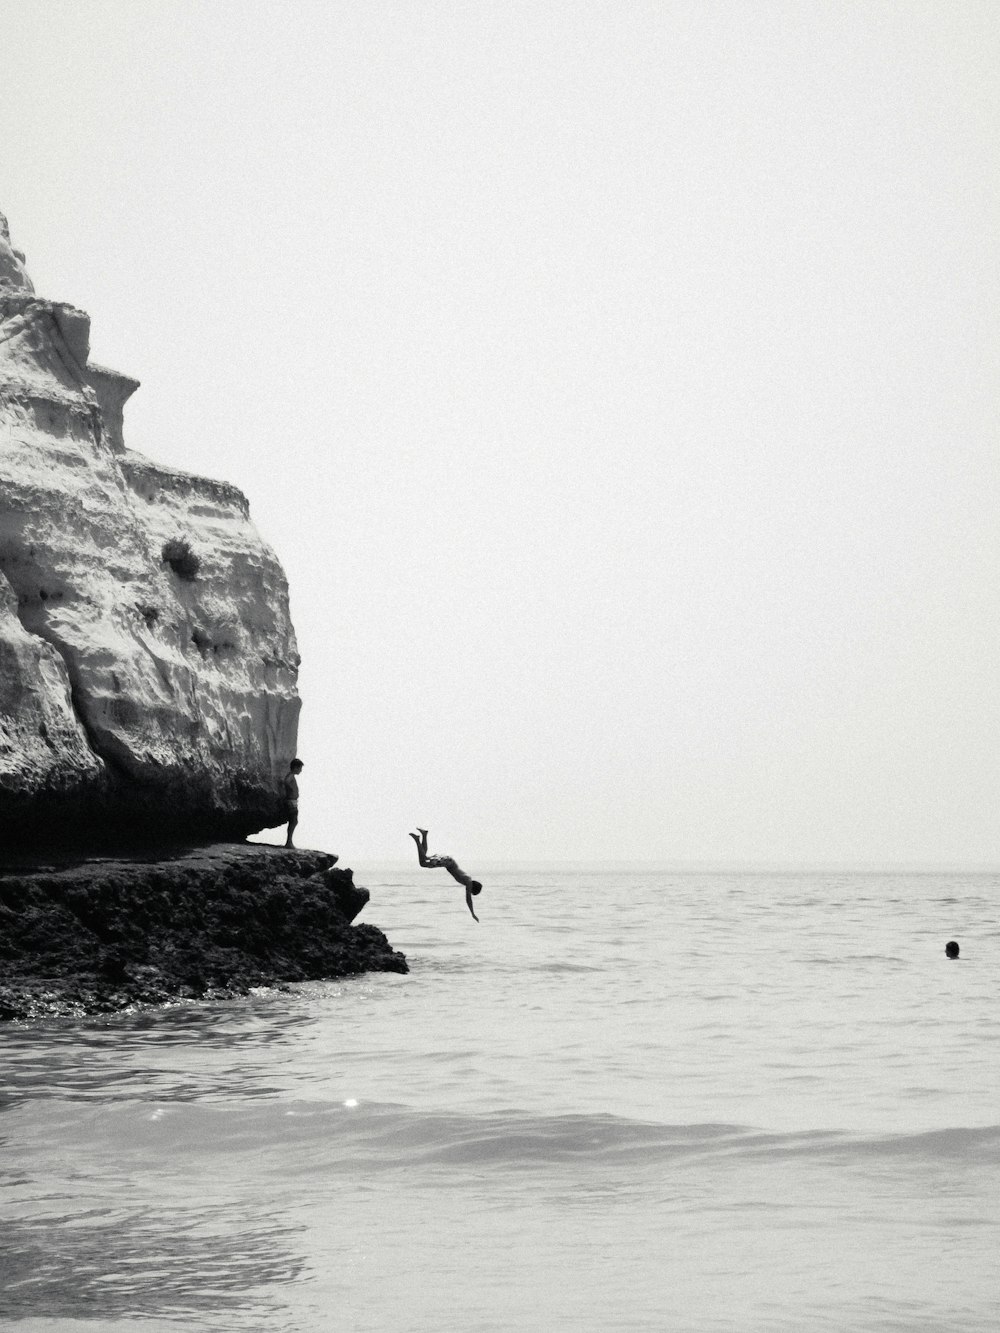 바다 위를 날아 다니는 새의 흑백 사진